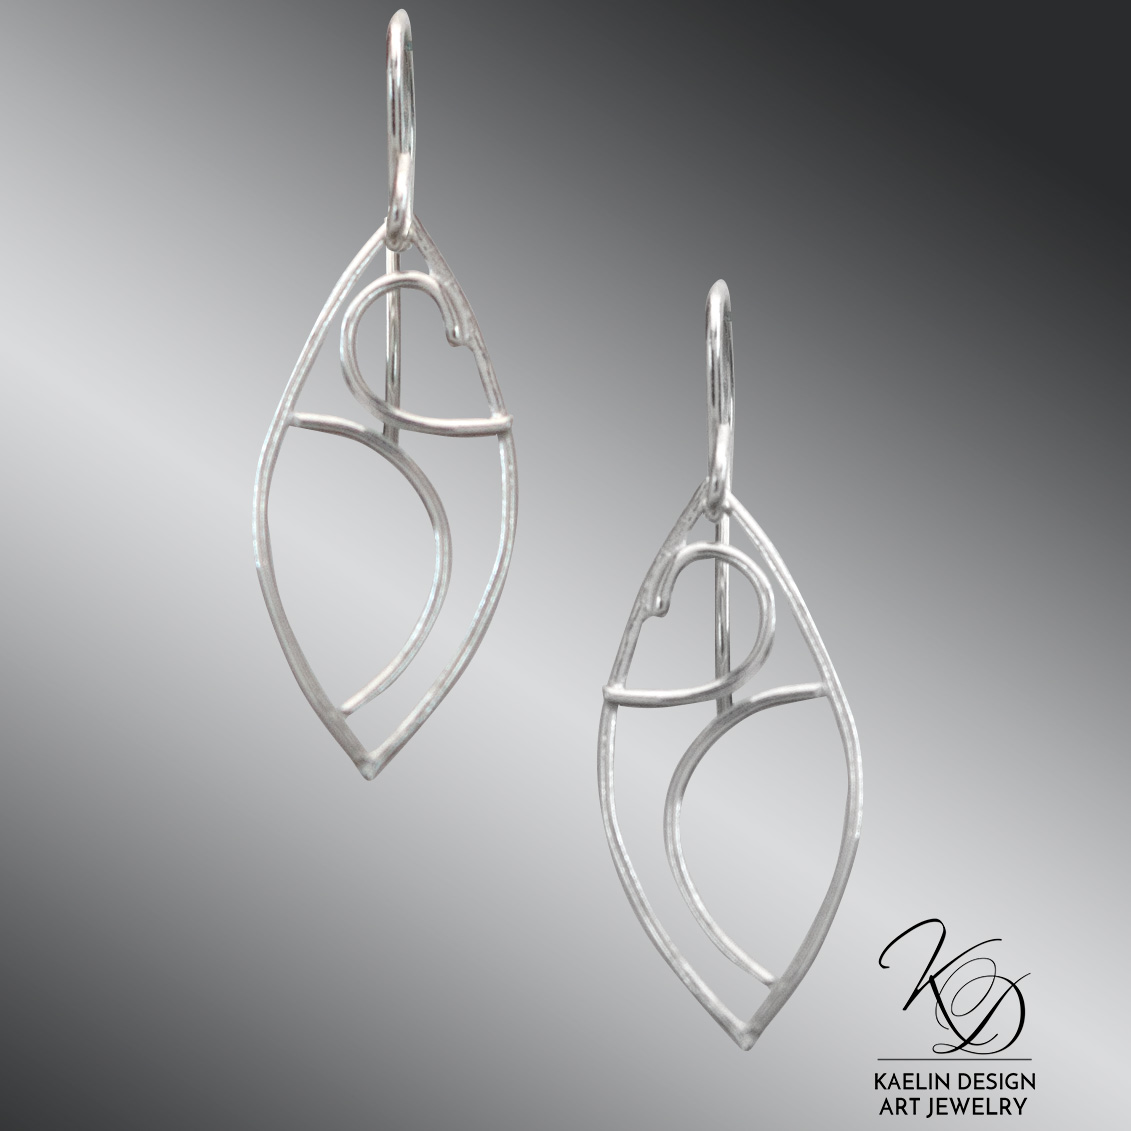 Océane Sterling Silver Ocean inspired Art Jewelry Earrings by Kaelin Design